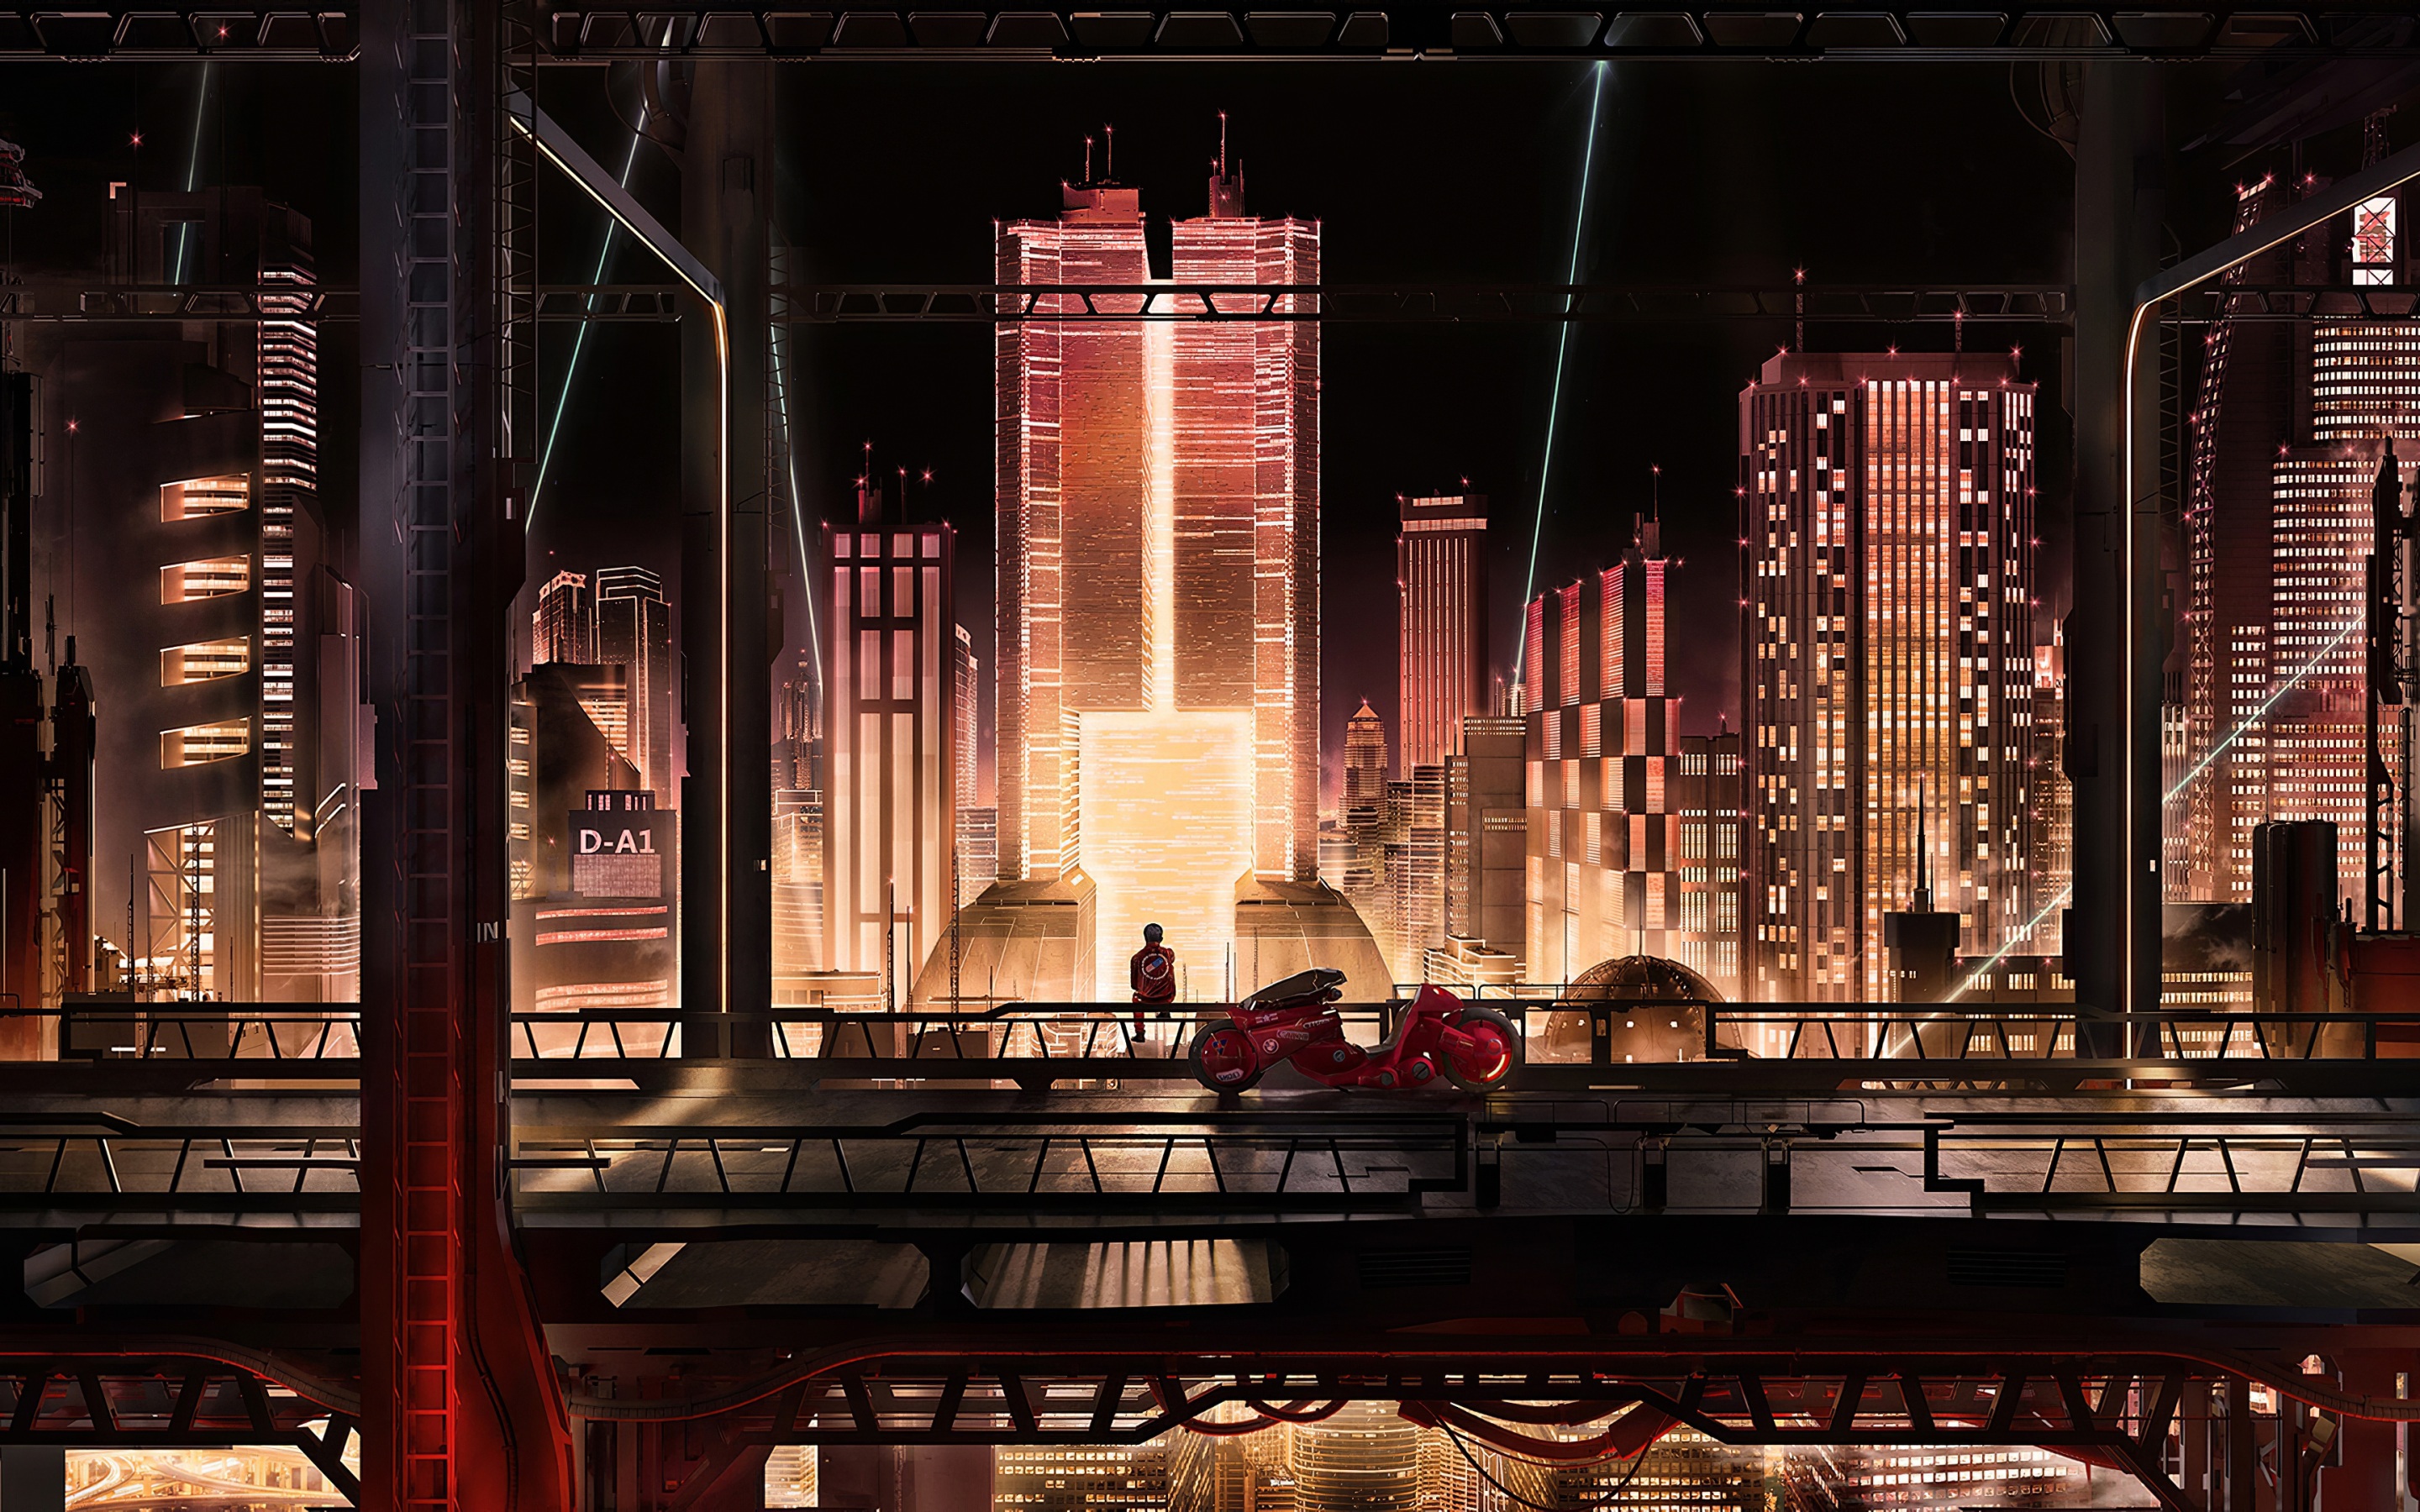 Anime cityscape: Hãy nhìn cái nhìn khác về thành phố với kiểu anime cityscape đầy màu sắc và huyền ảo. Bức ảnh này chắc chắn sẽ khiến bạn muốn đắm mình trong thế giới anime đầy phấn khích và độc đáo.